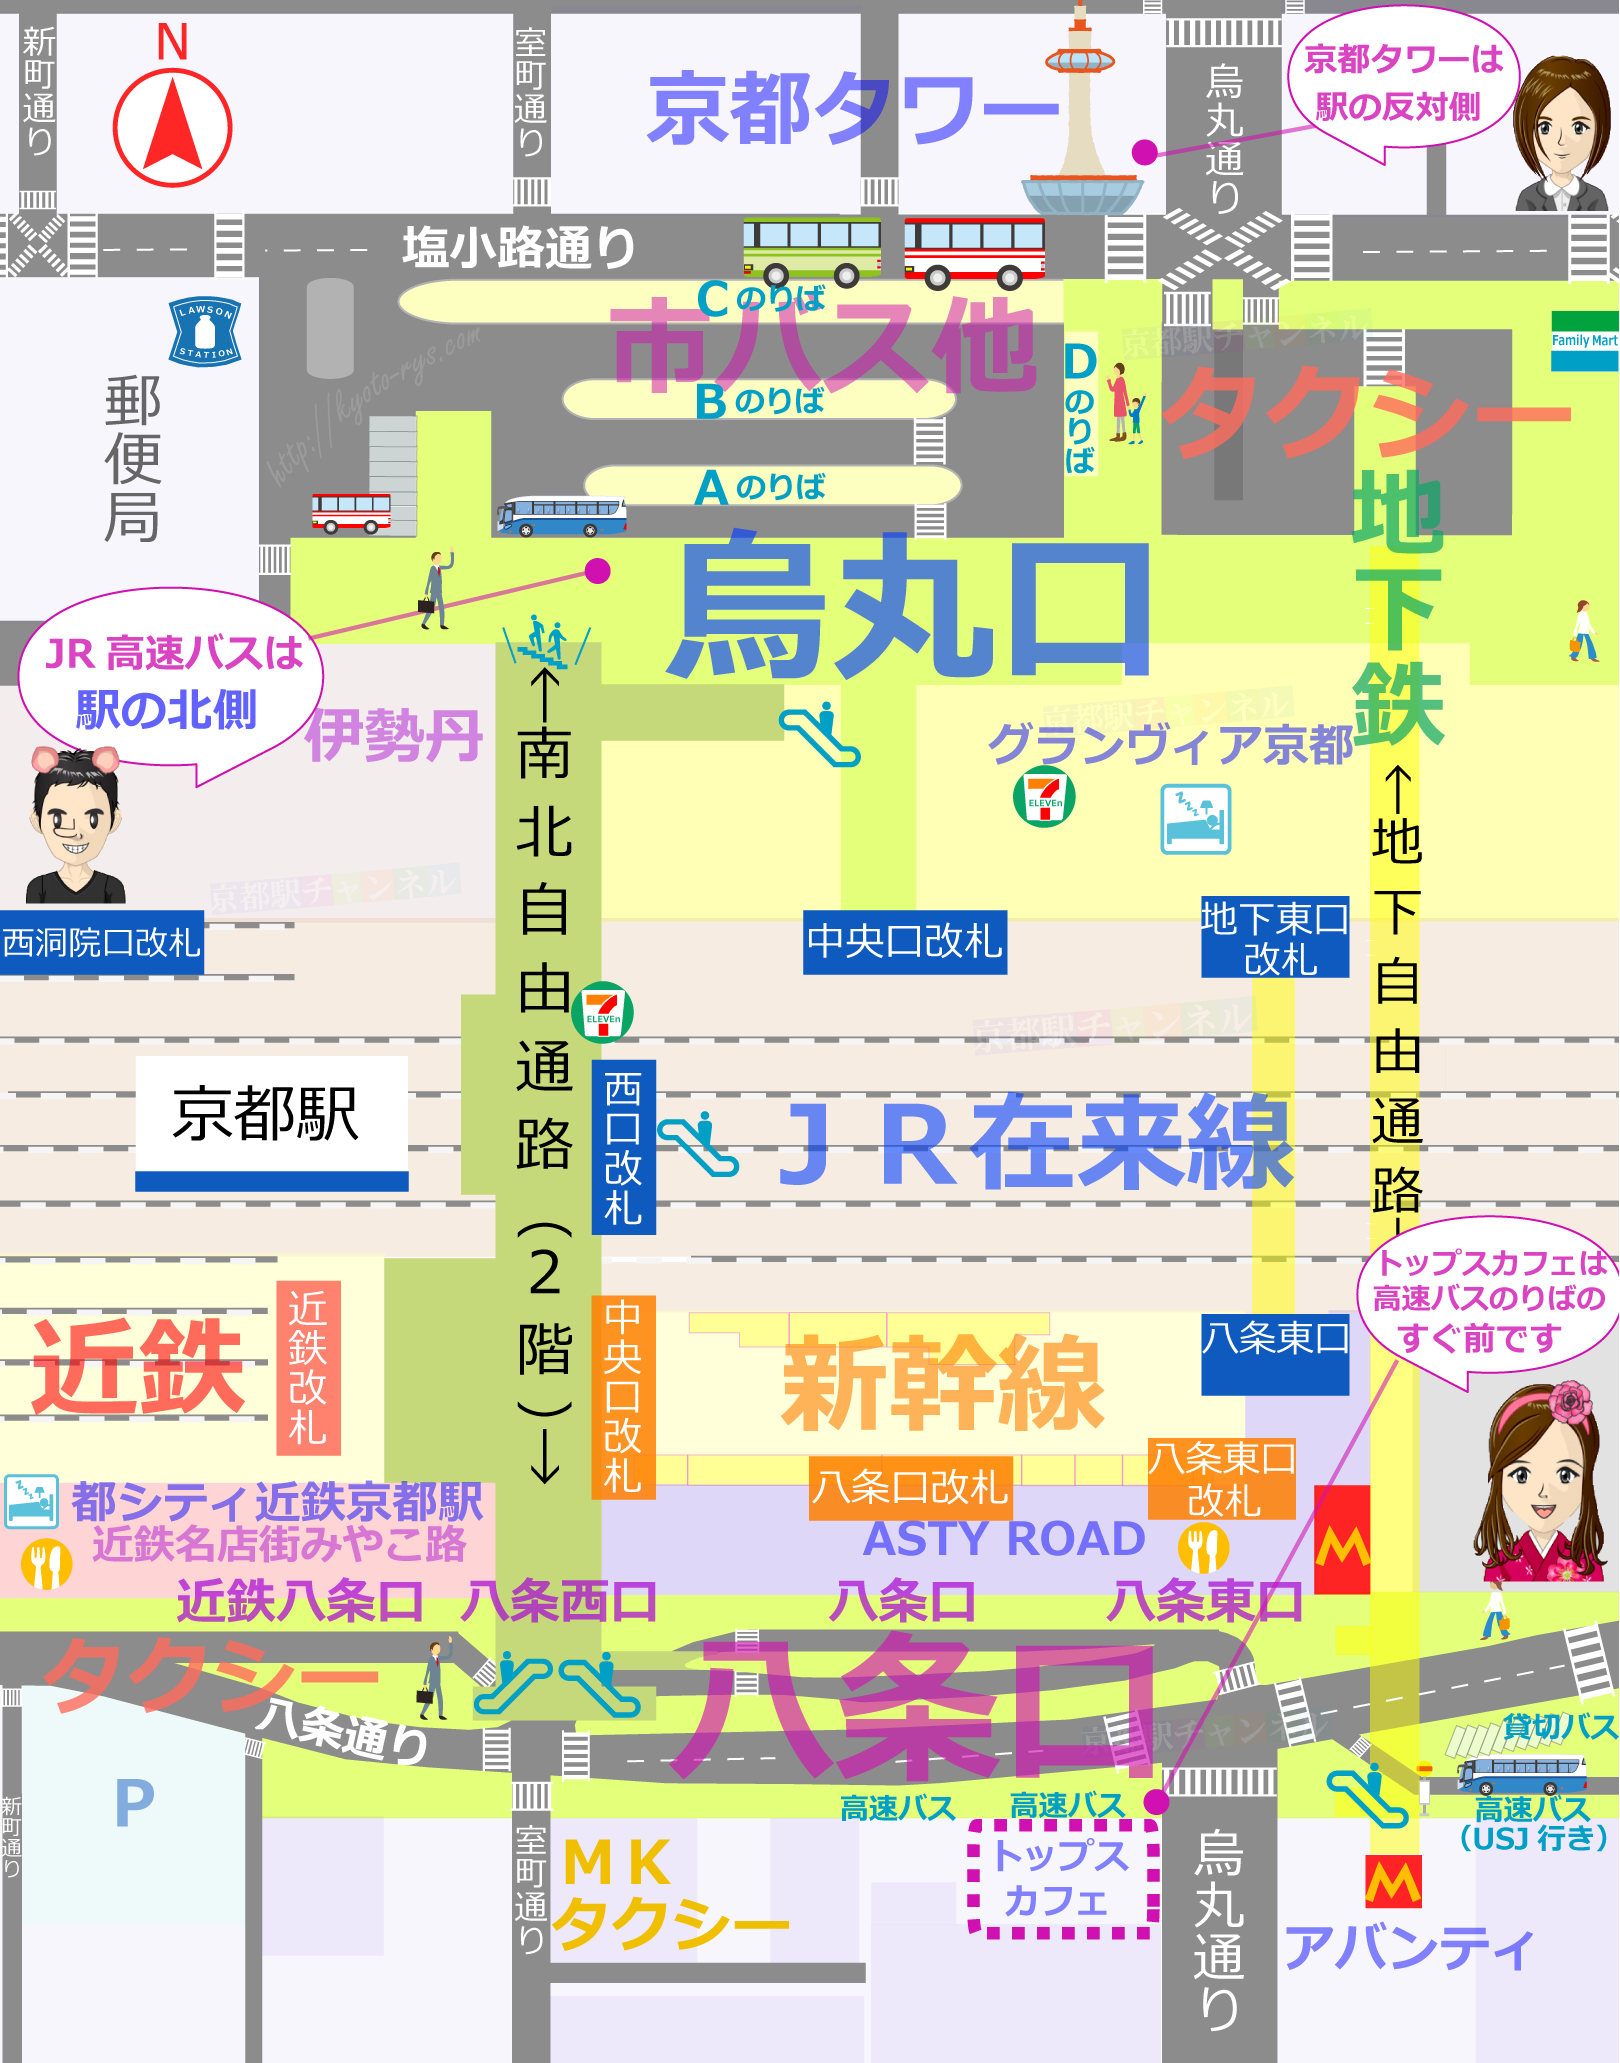 京都駅のトップスカフェの地図